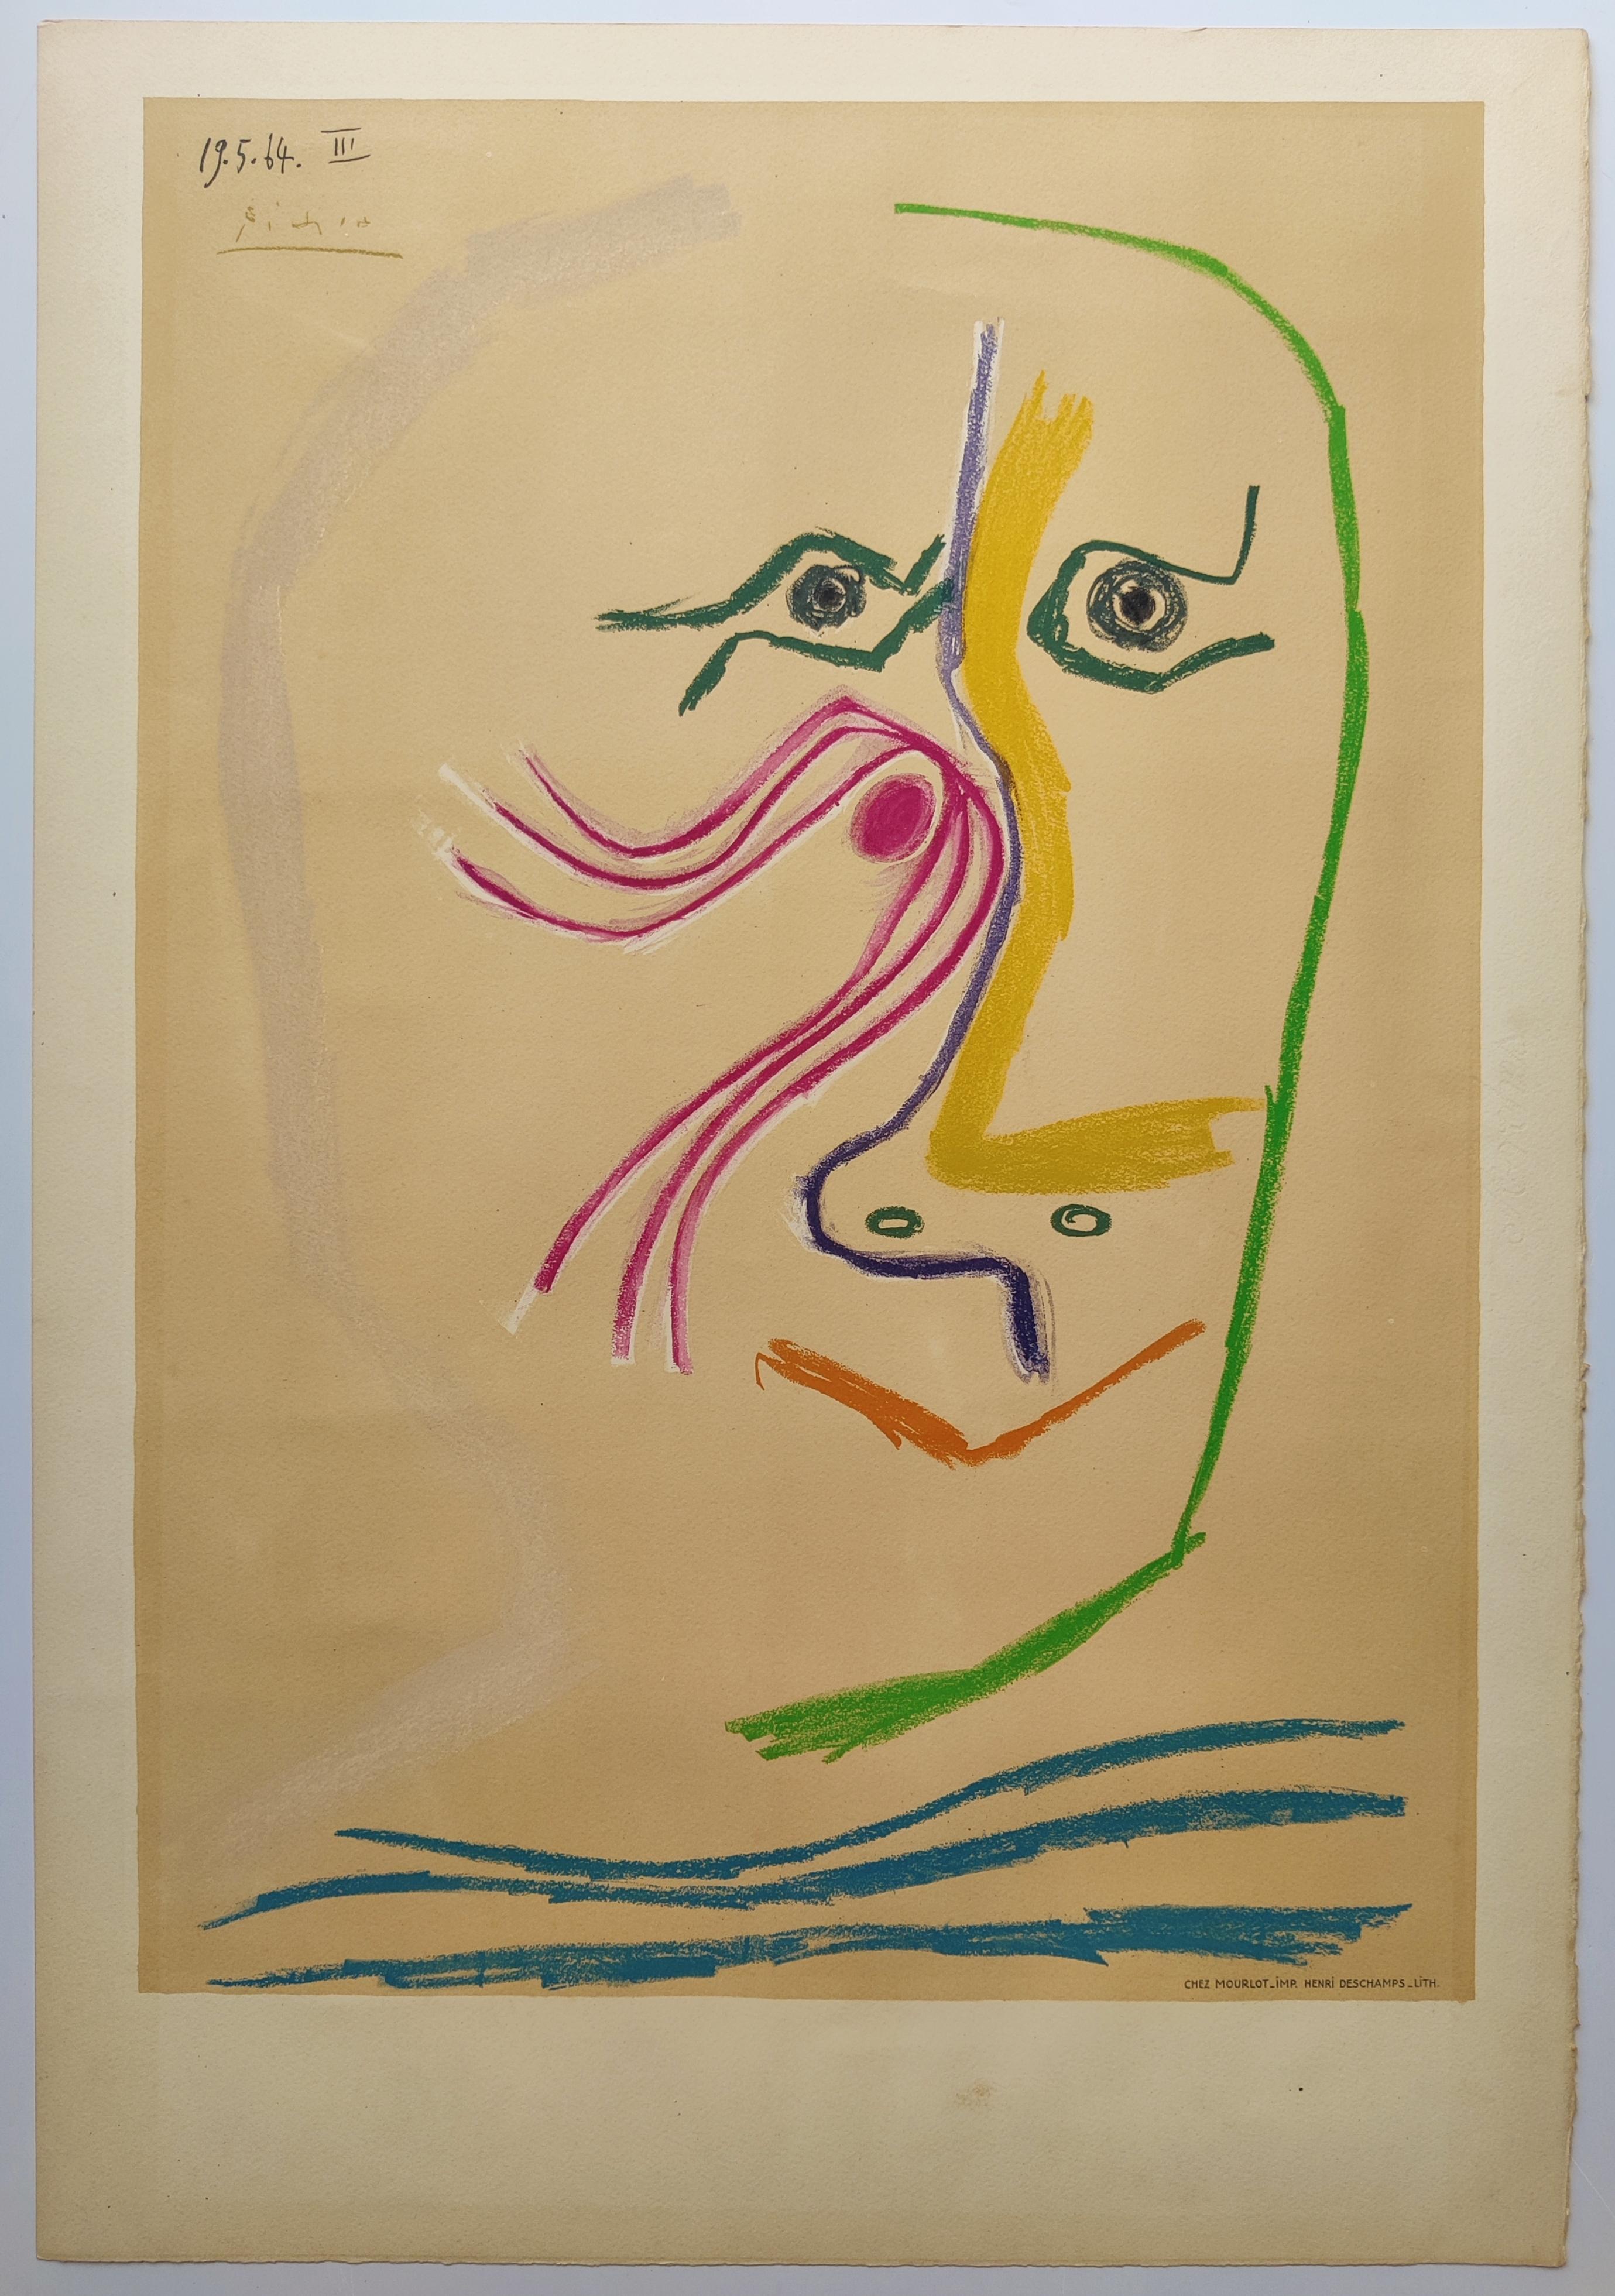 Pablo Picasso
Hommage à René Char, 1969
Lithographie couleur sur papier vélin d'Arches  par Henri Deschamps, Paris
Signé dans la plaque 
Taille de l'image : 63,6 x 44,7 cm
Taille de la feuille : 75,7 x 52 cm
Imprimé par Mourlot, Paris
Publié par le